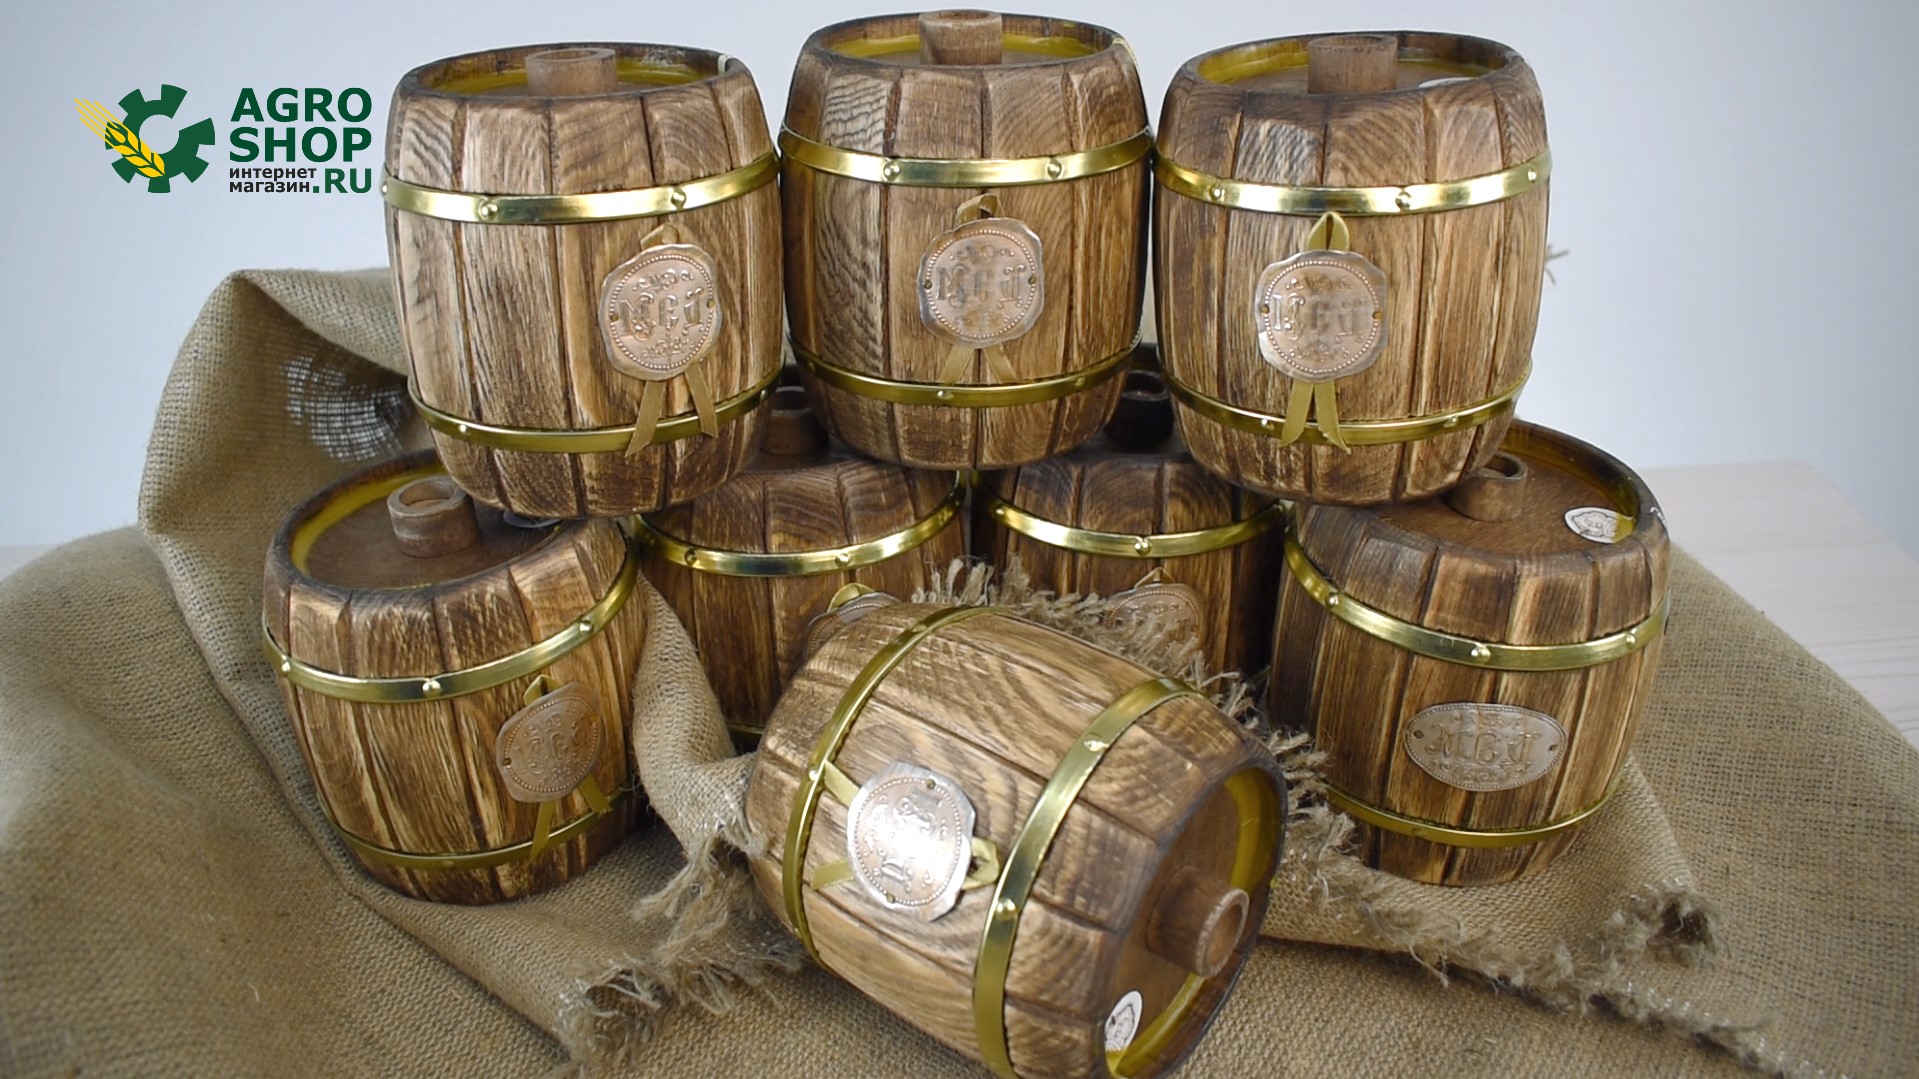 Алтайский натуральный мёд в бочонках ручной работы 0,75 кг